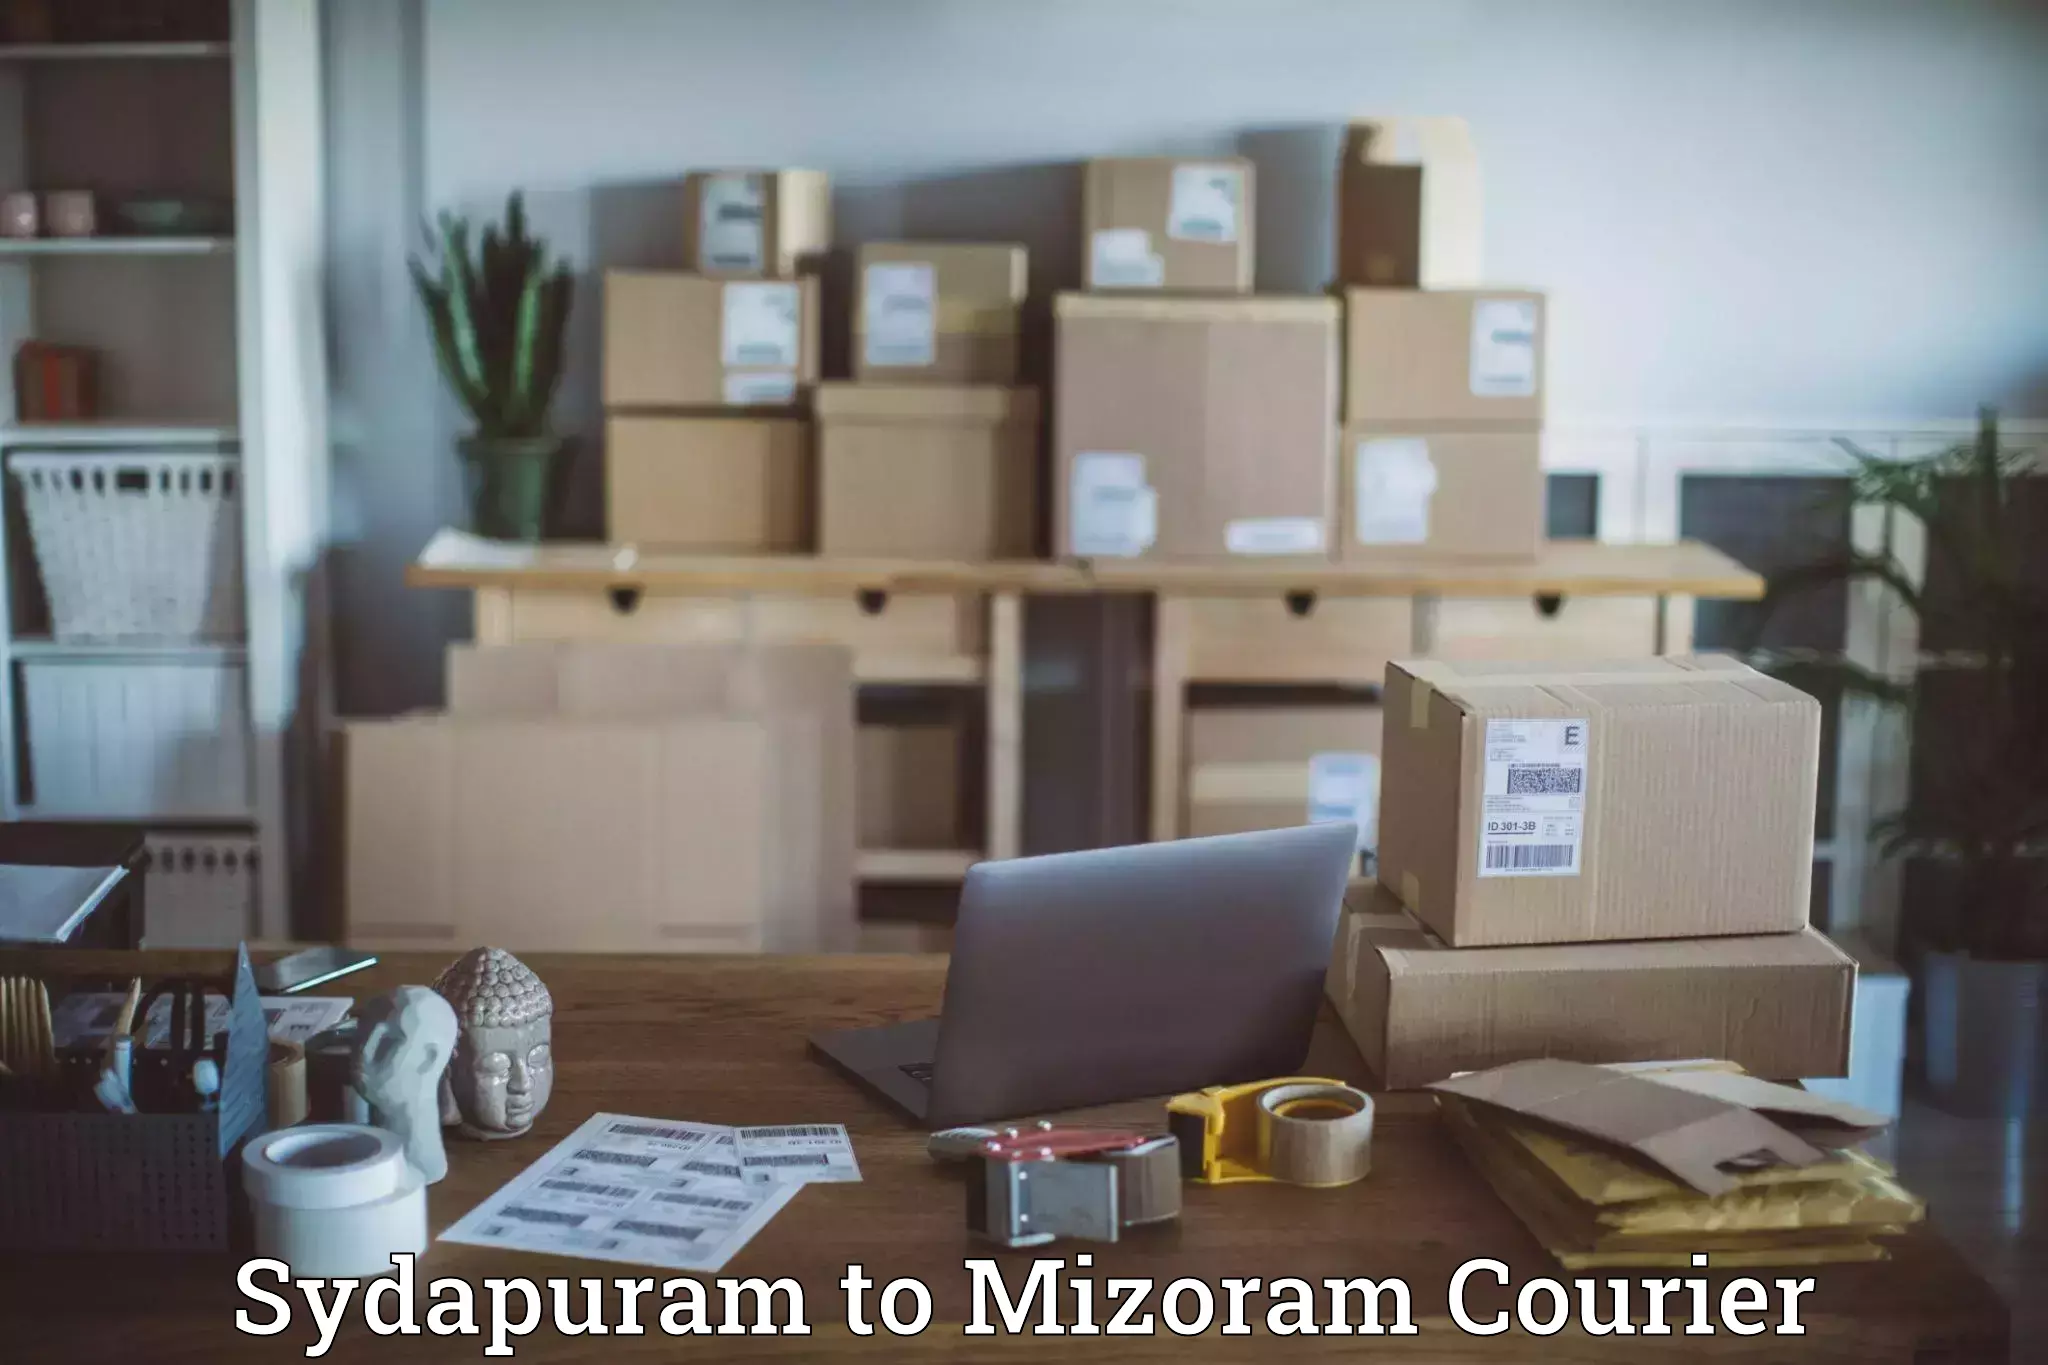 24-hour courier services Sydapuram to Siaha